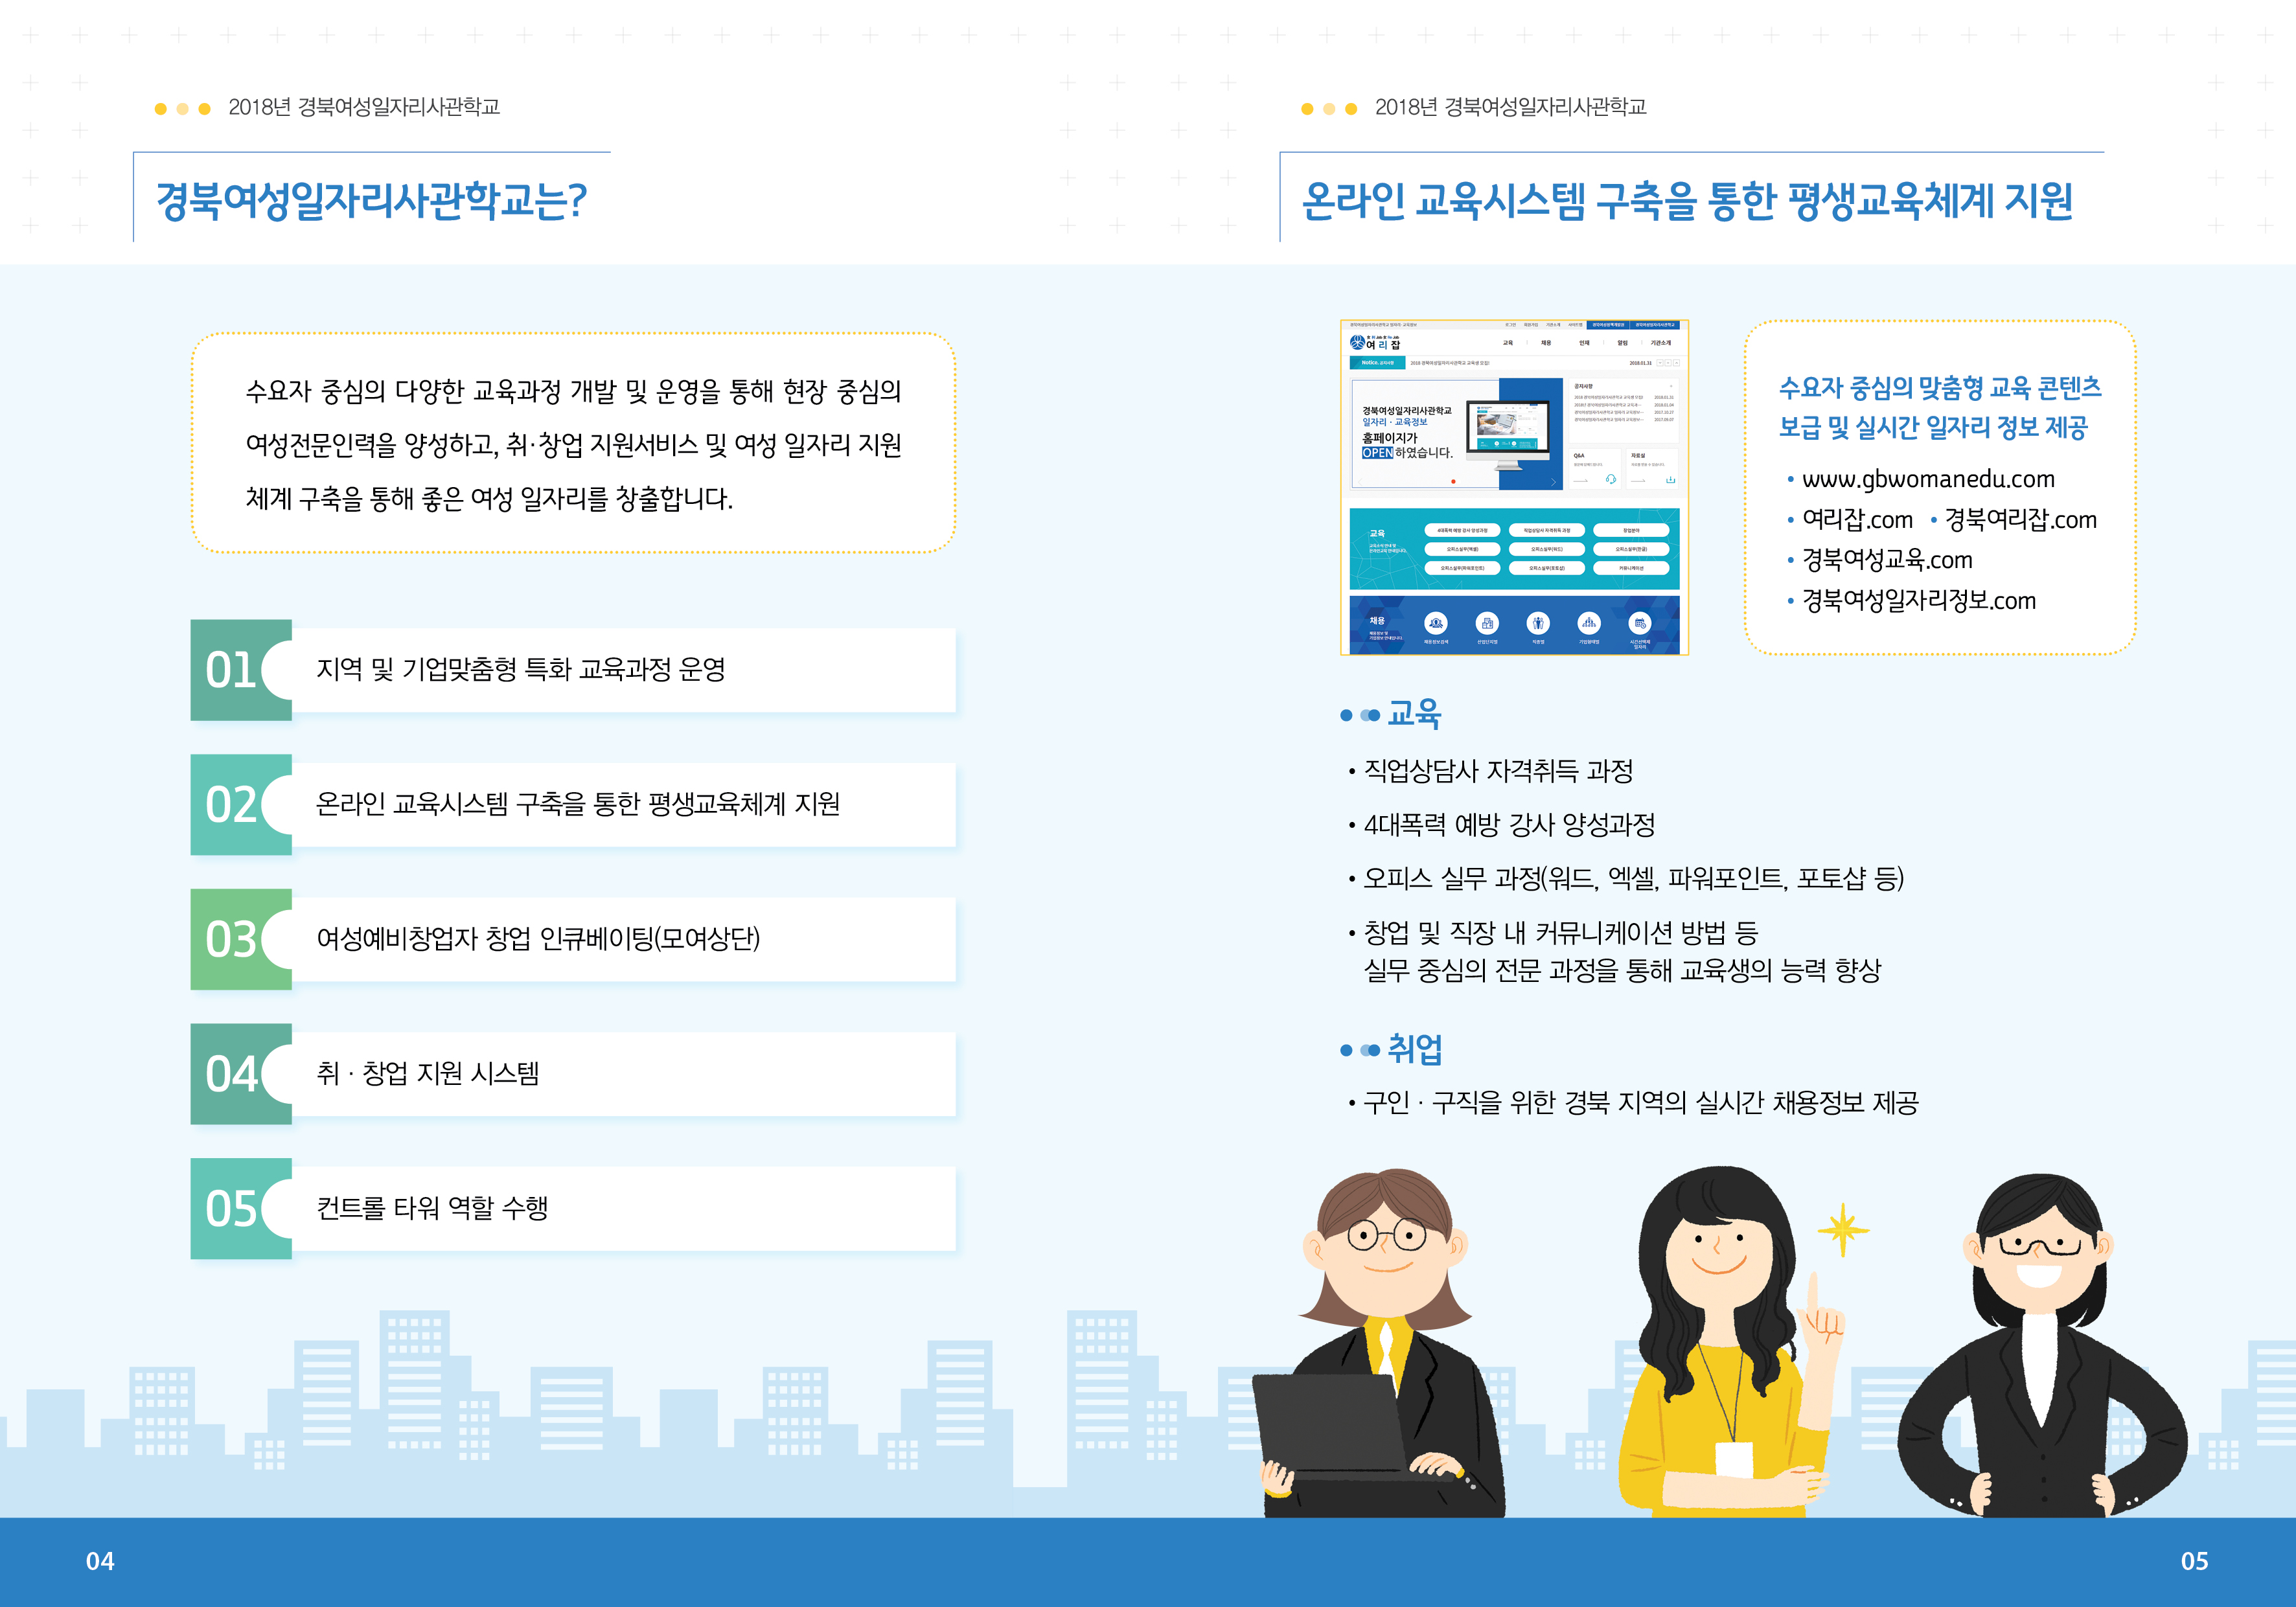 0309_경북여성일자리사관학교 교육프로그램 리플릿 출3.jpg